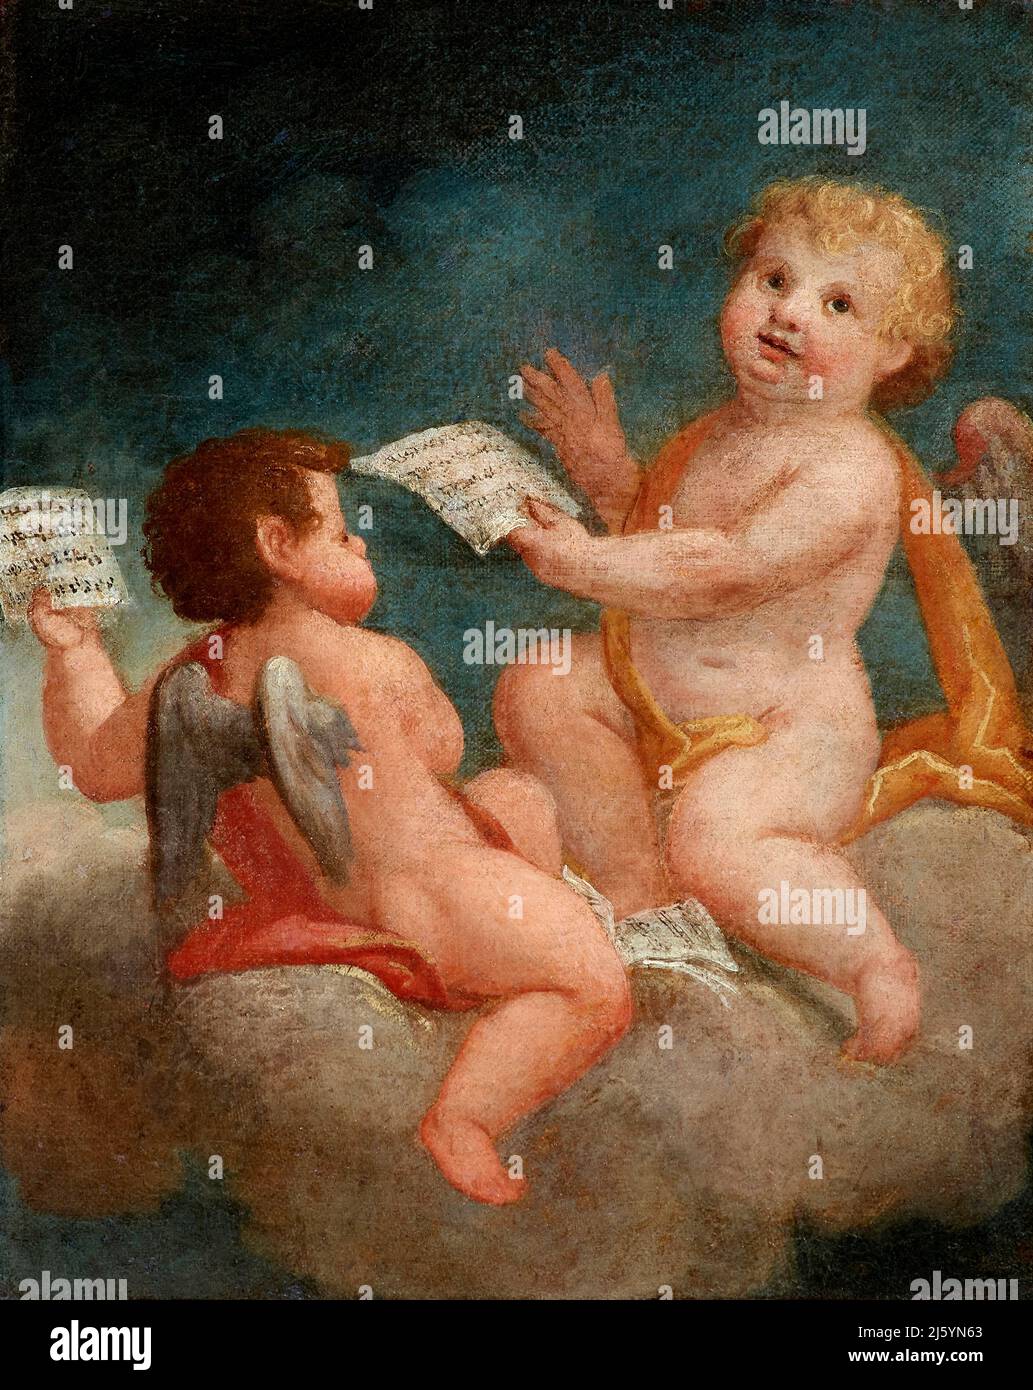 Putti - olio su tela - pittore bergamasco del XVIII secolo - Grassobbio (Bg),Italia, chiesa di S.Alessandro Stock Photo